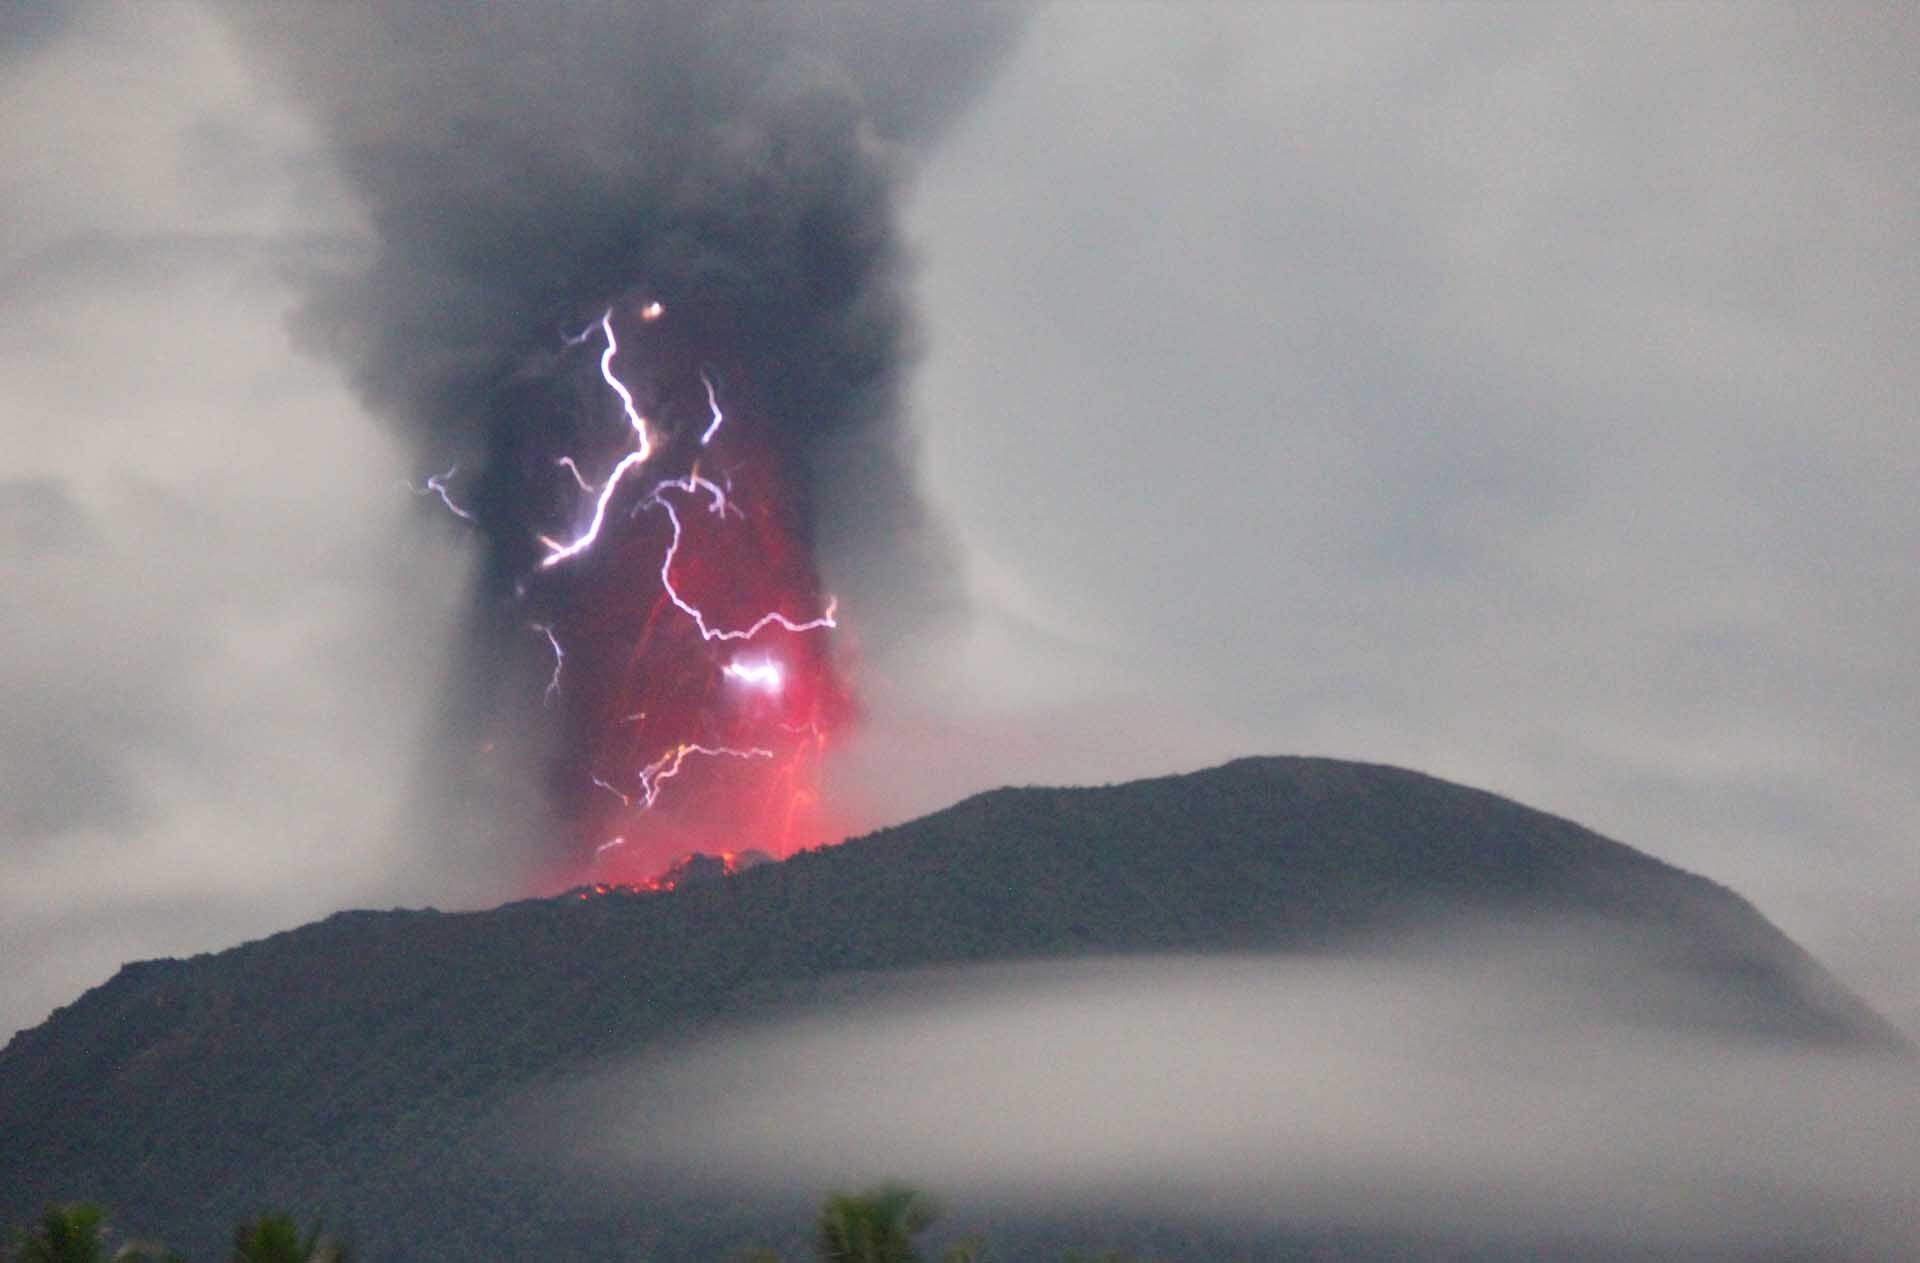 ระทึก “ภูเขาไฟอีบู” ระเบิดอีก-พ่นเถ้าถ่านสูง 7 กิโลเมตร ตั้งแต่ต้นปีปะทุครั้งที่ 100